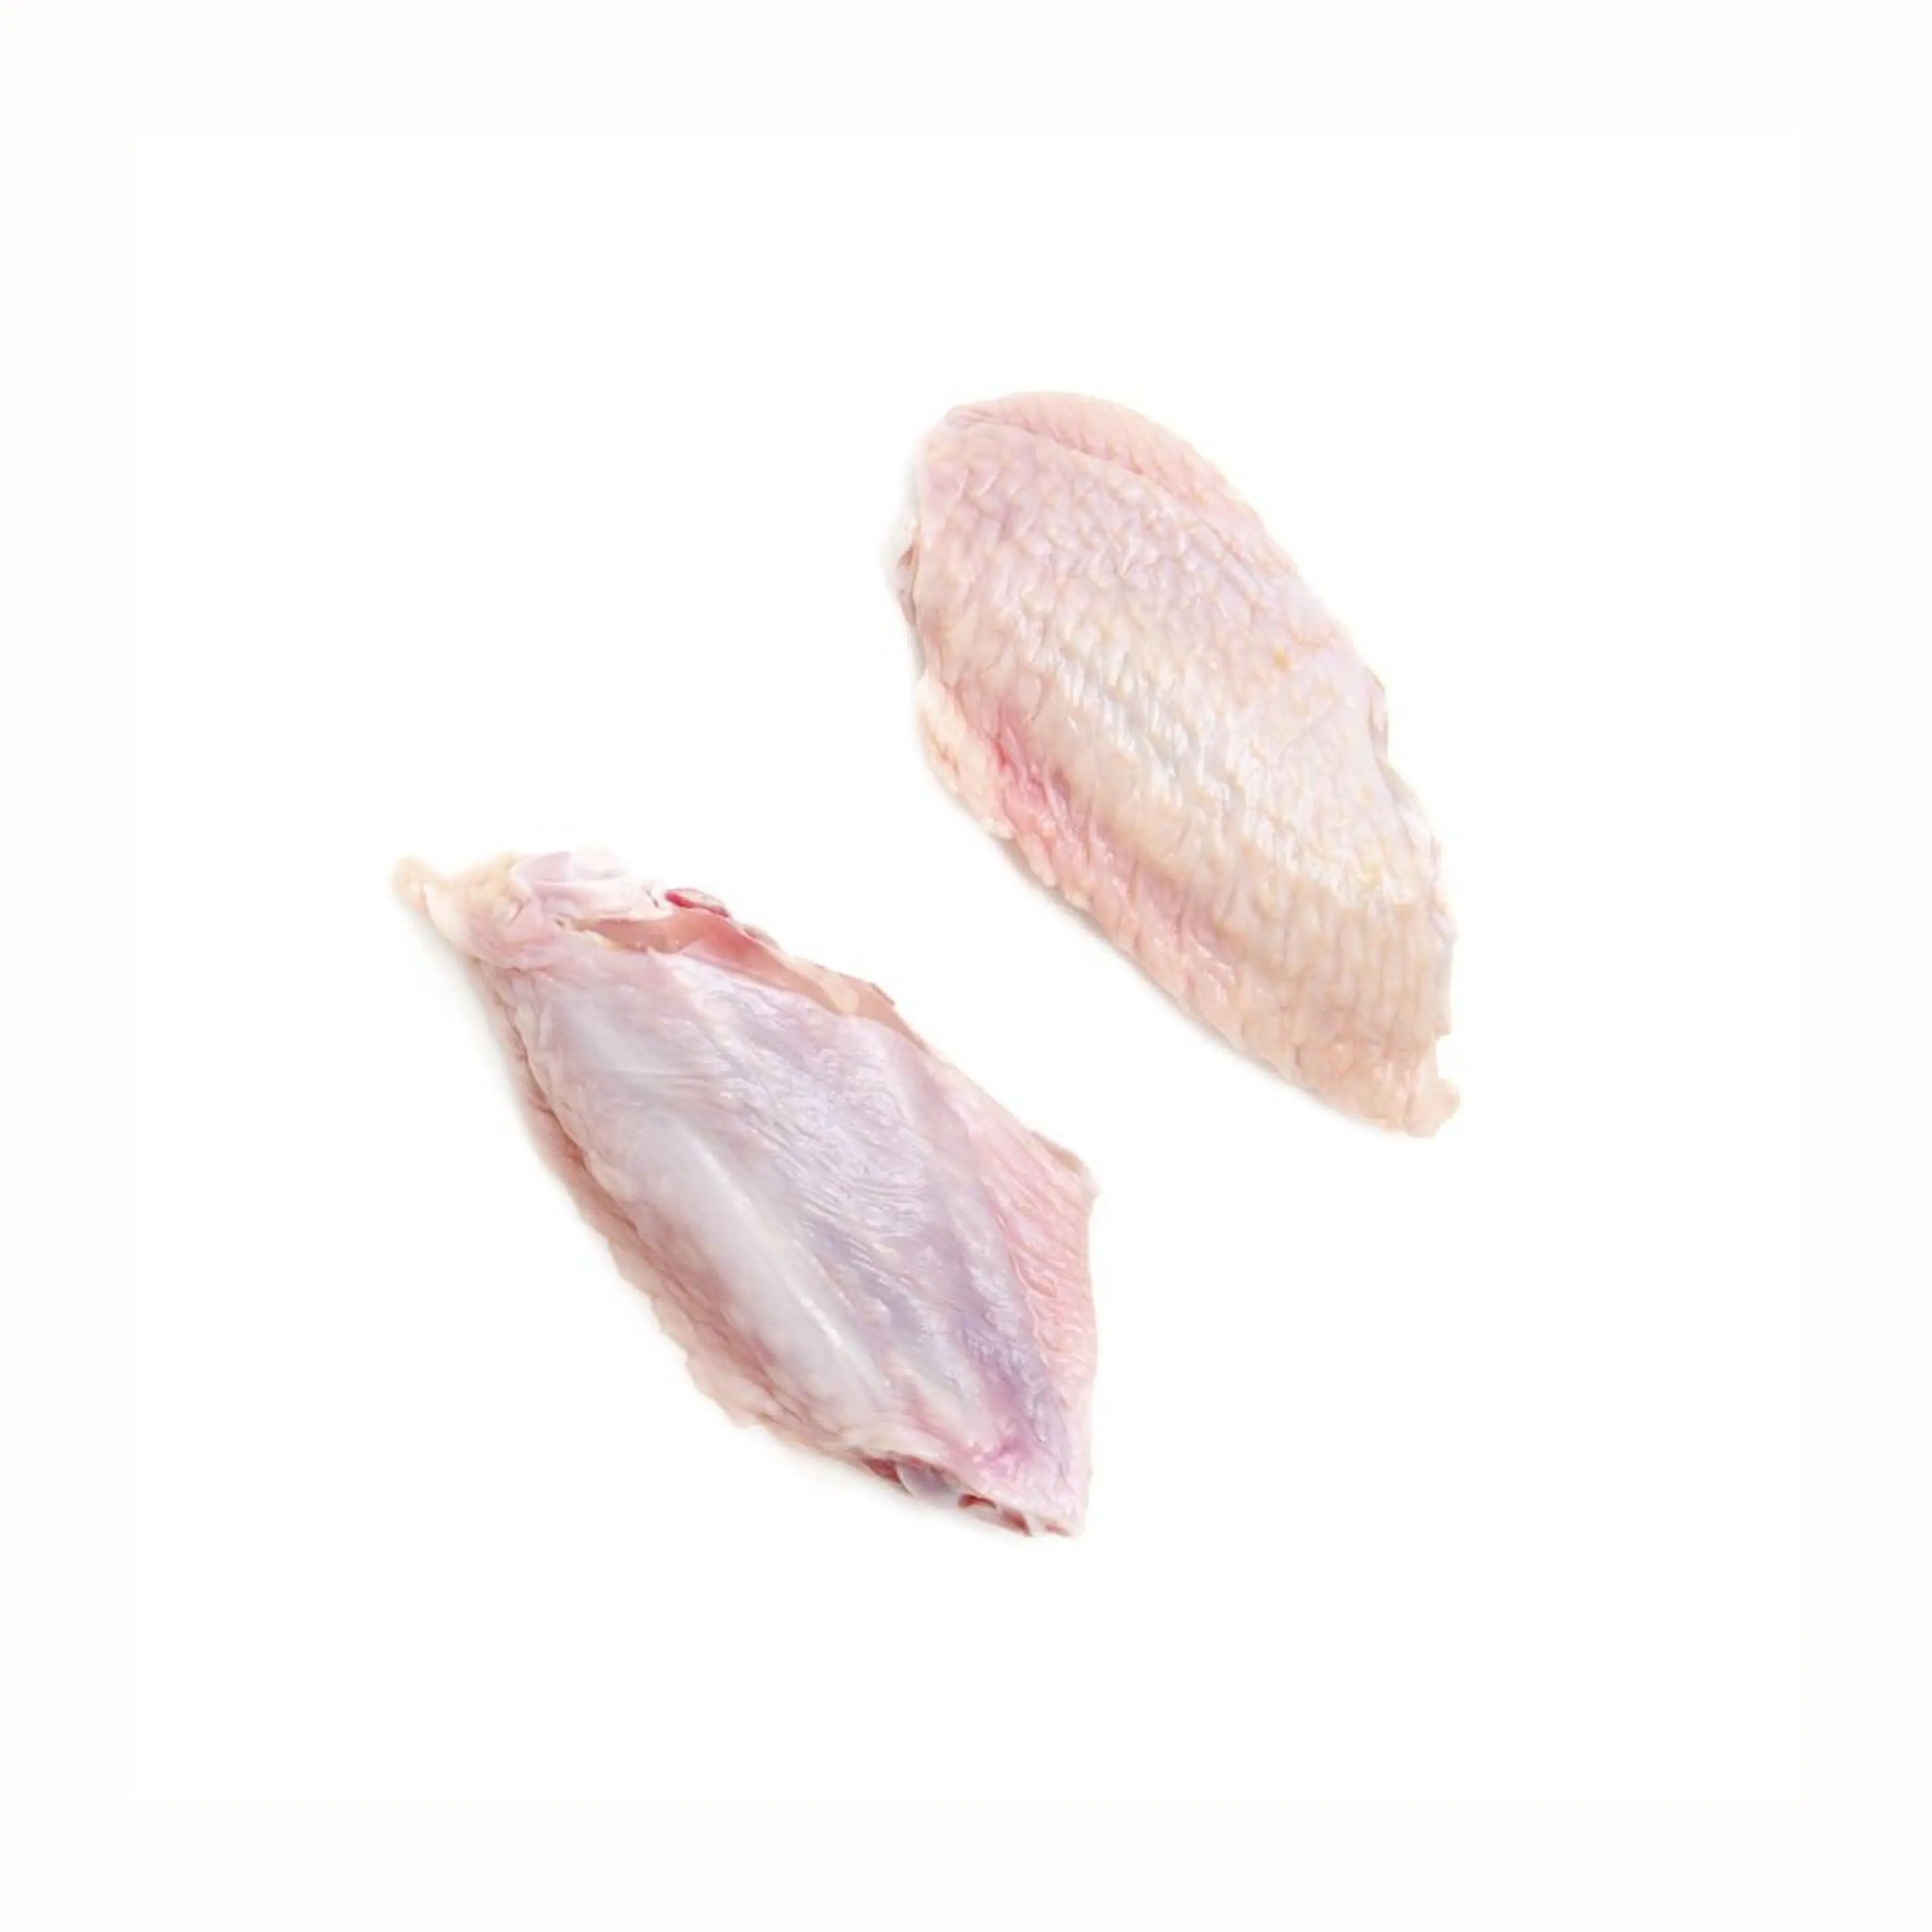 Pelle bianca solo congelato ala di pollo crudo migliore qualità fresco congelato processo di pollo metà comune ali a basso prezzo a buon mercato